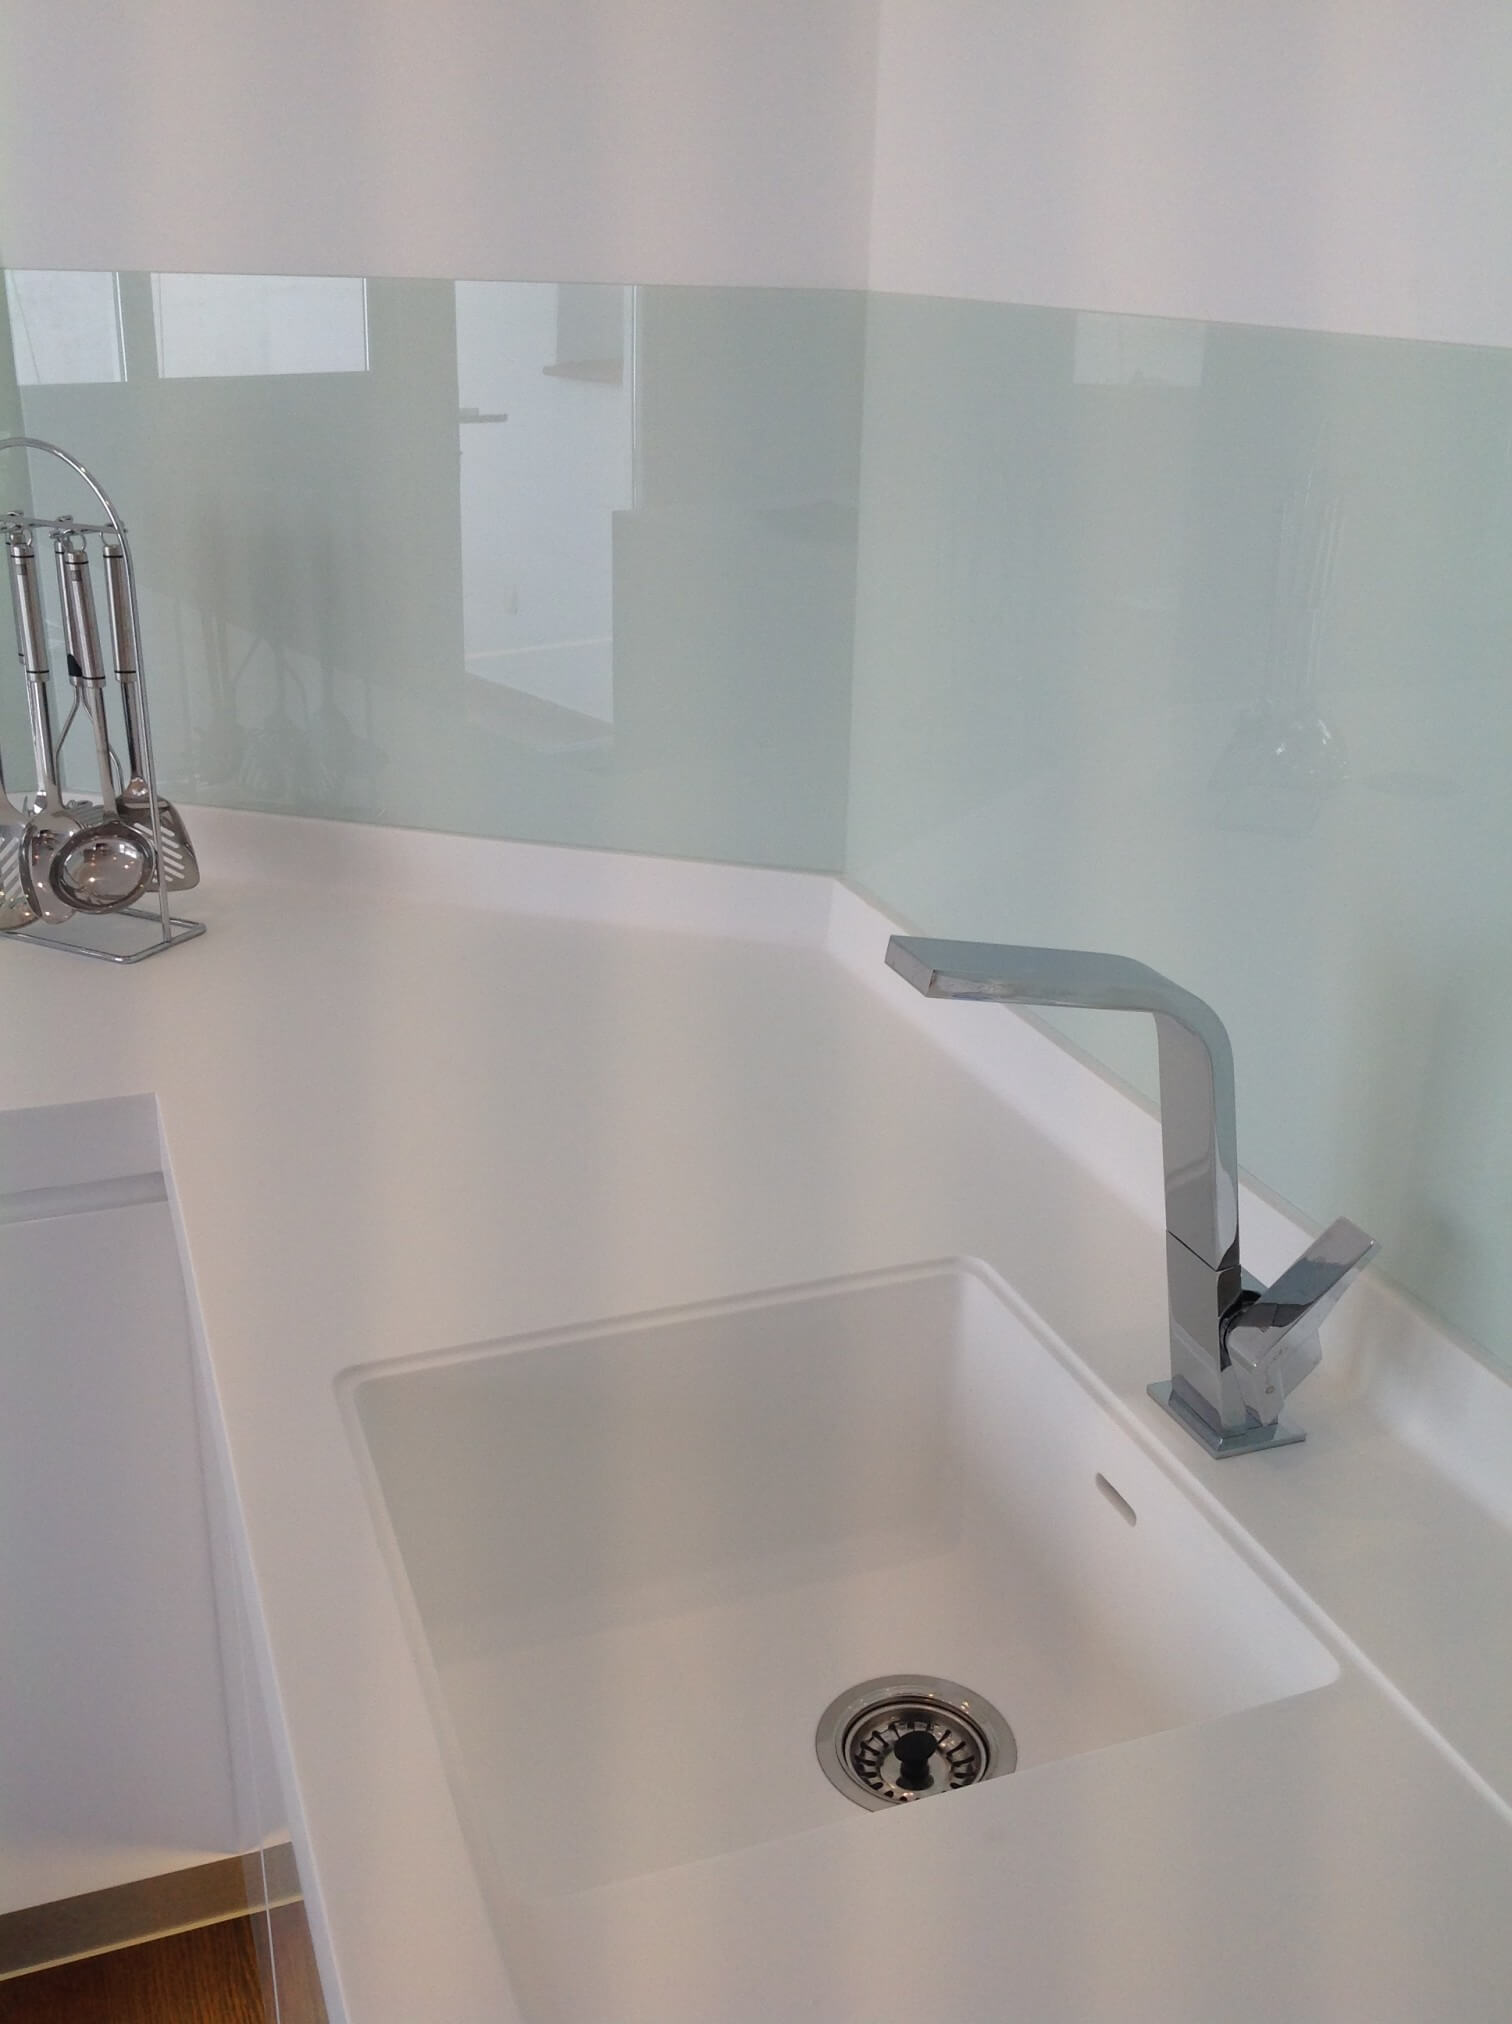 Sink with glass splashback